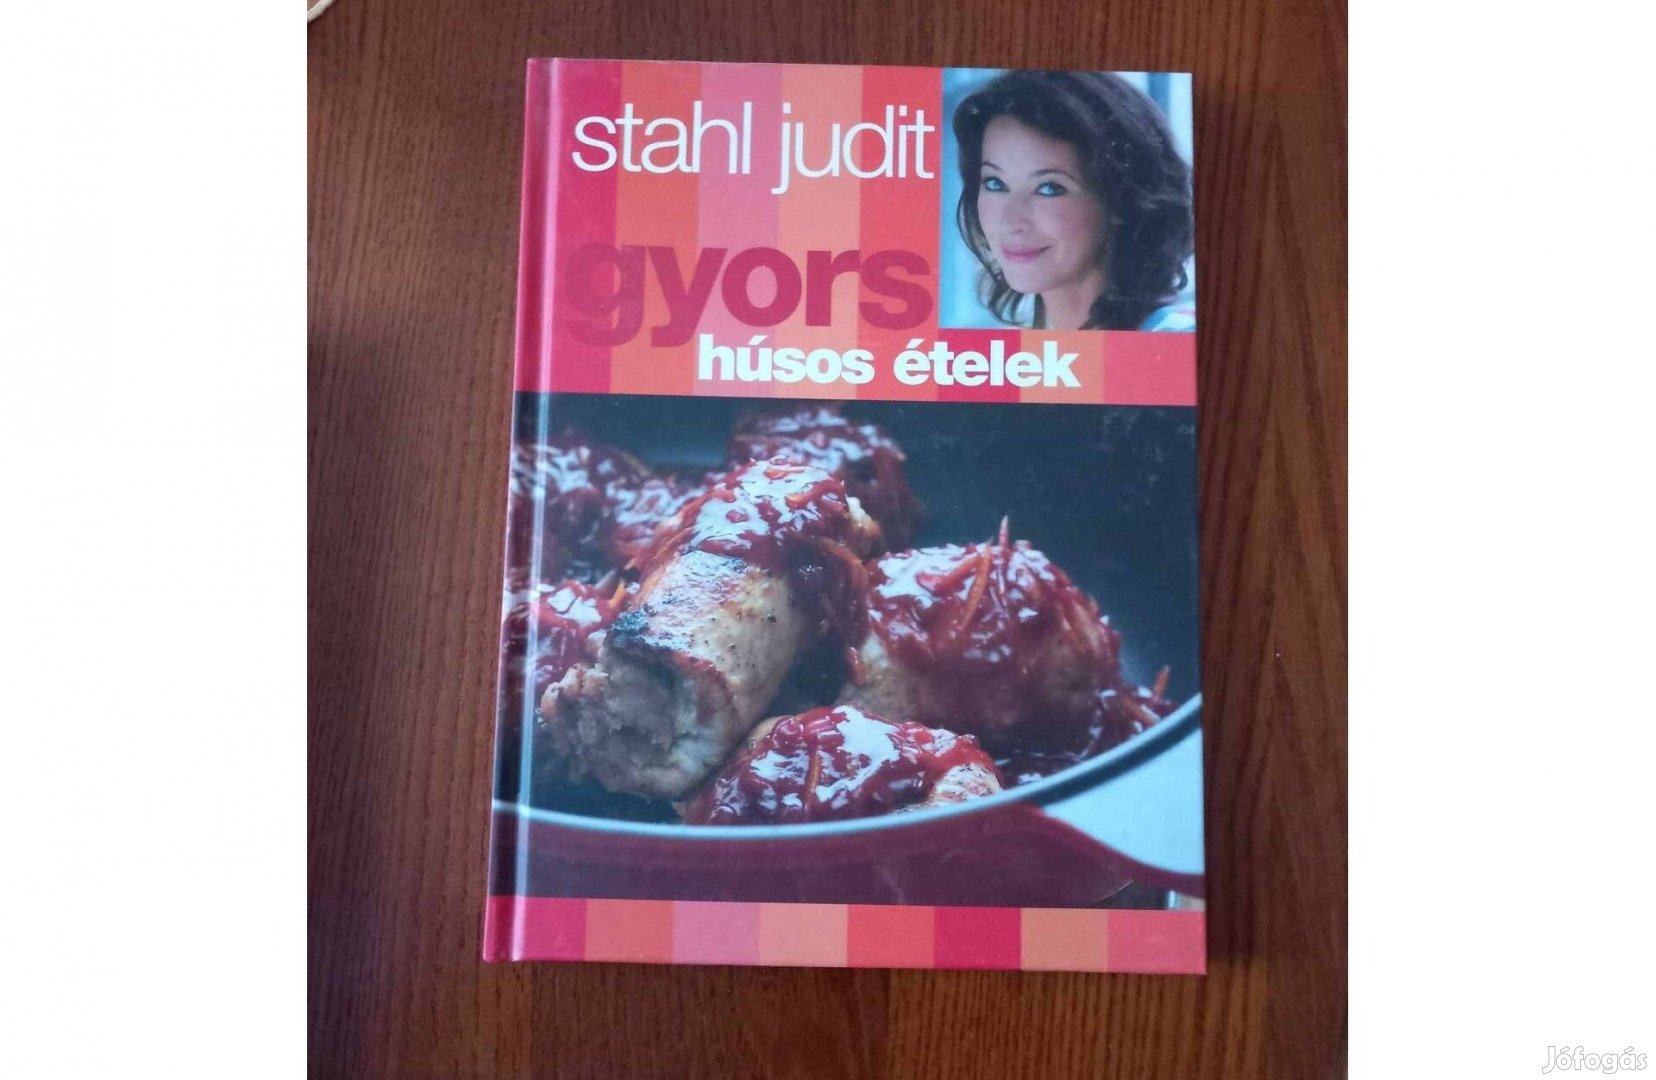 Gyors húsos ételek - Stahl Judit újszerű